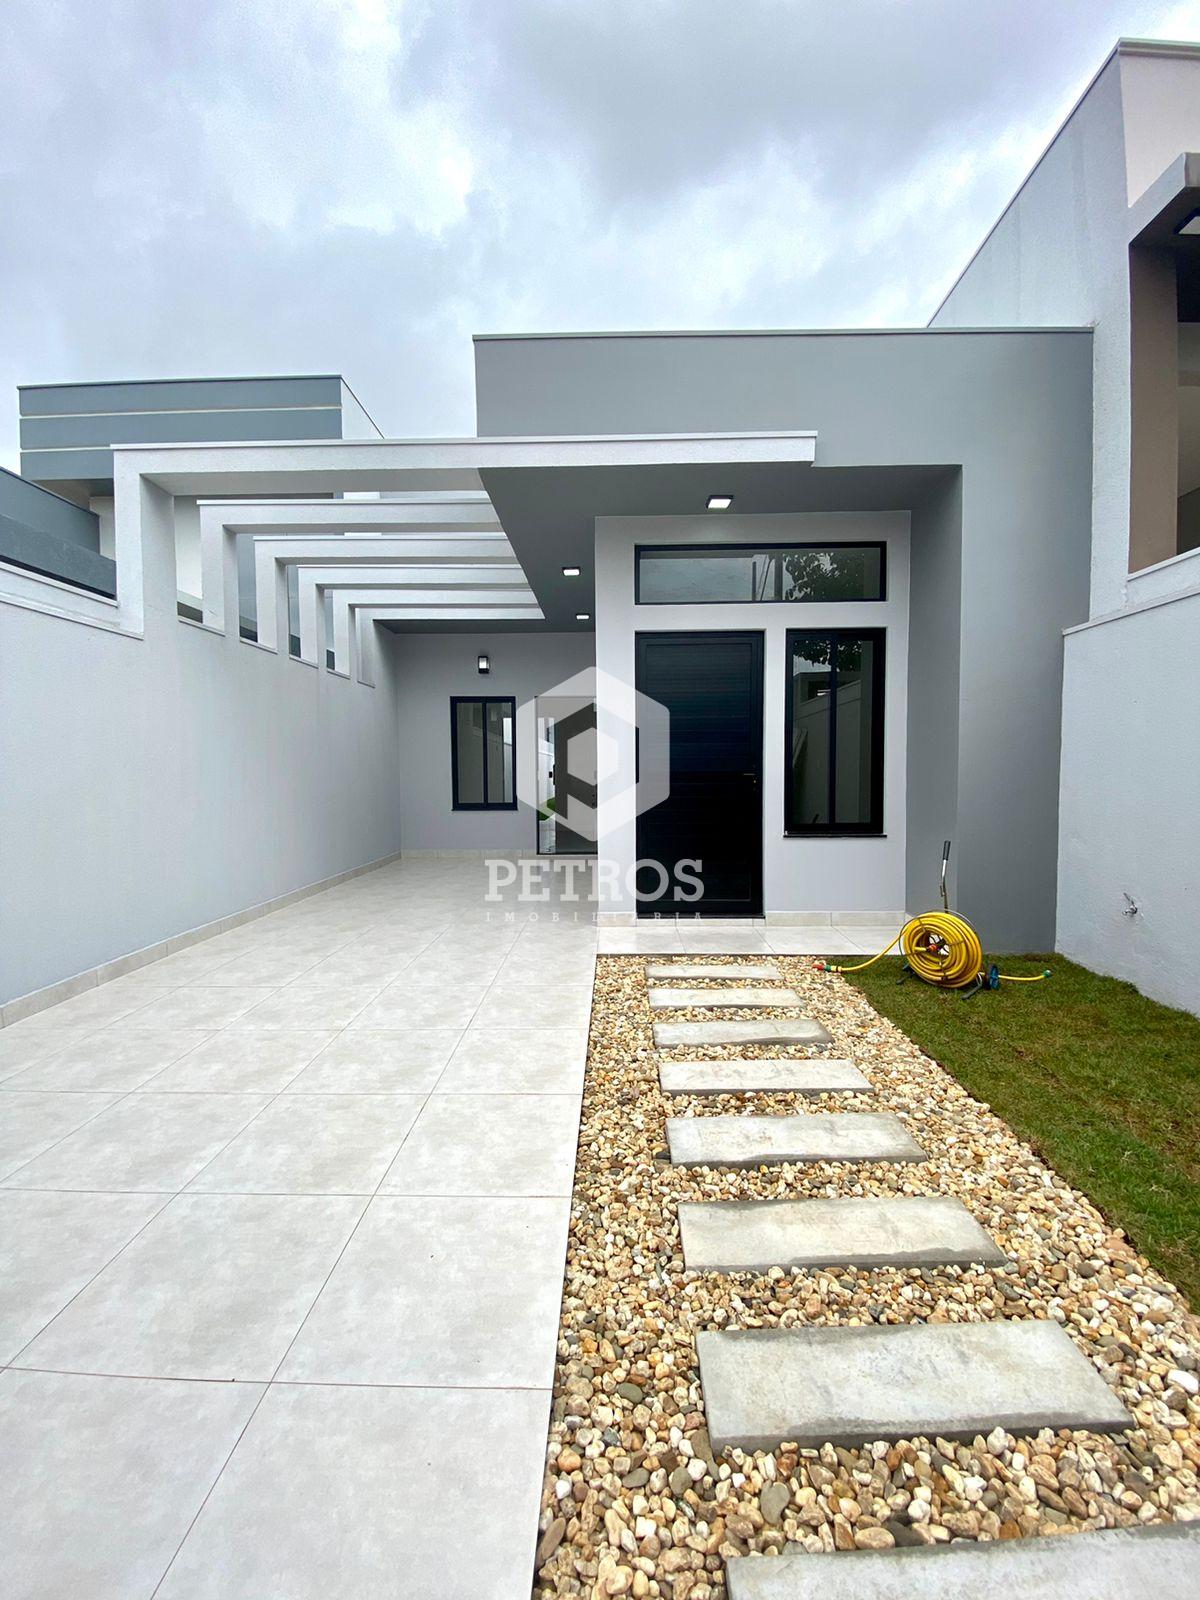 Casa térrea localizada no Loteamento Portal da Barão - Vila Industrial.